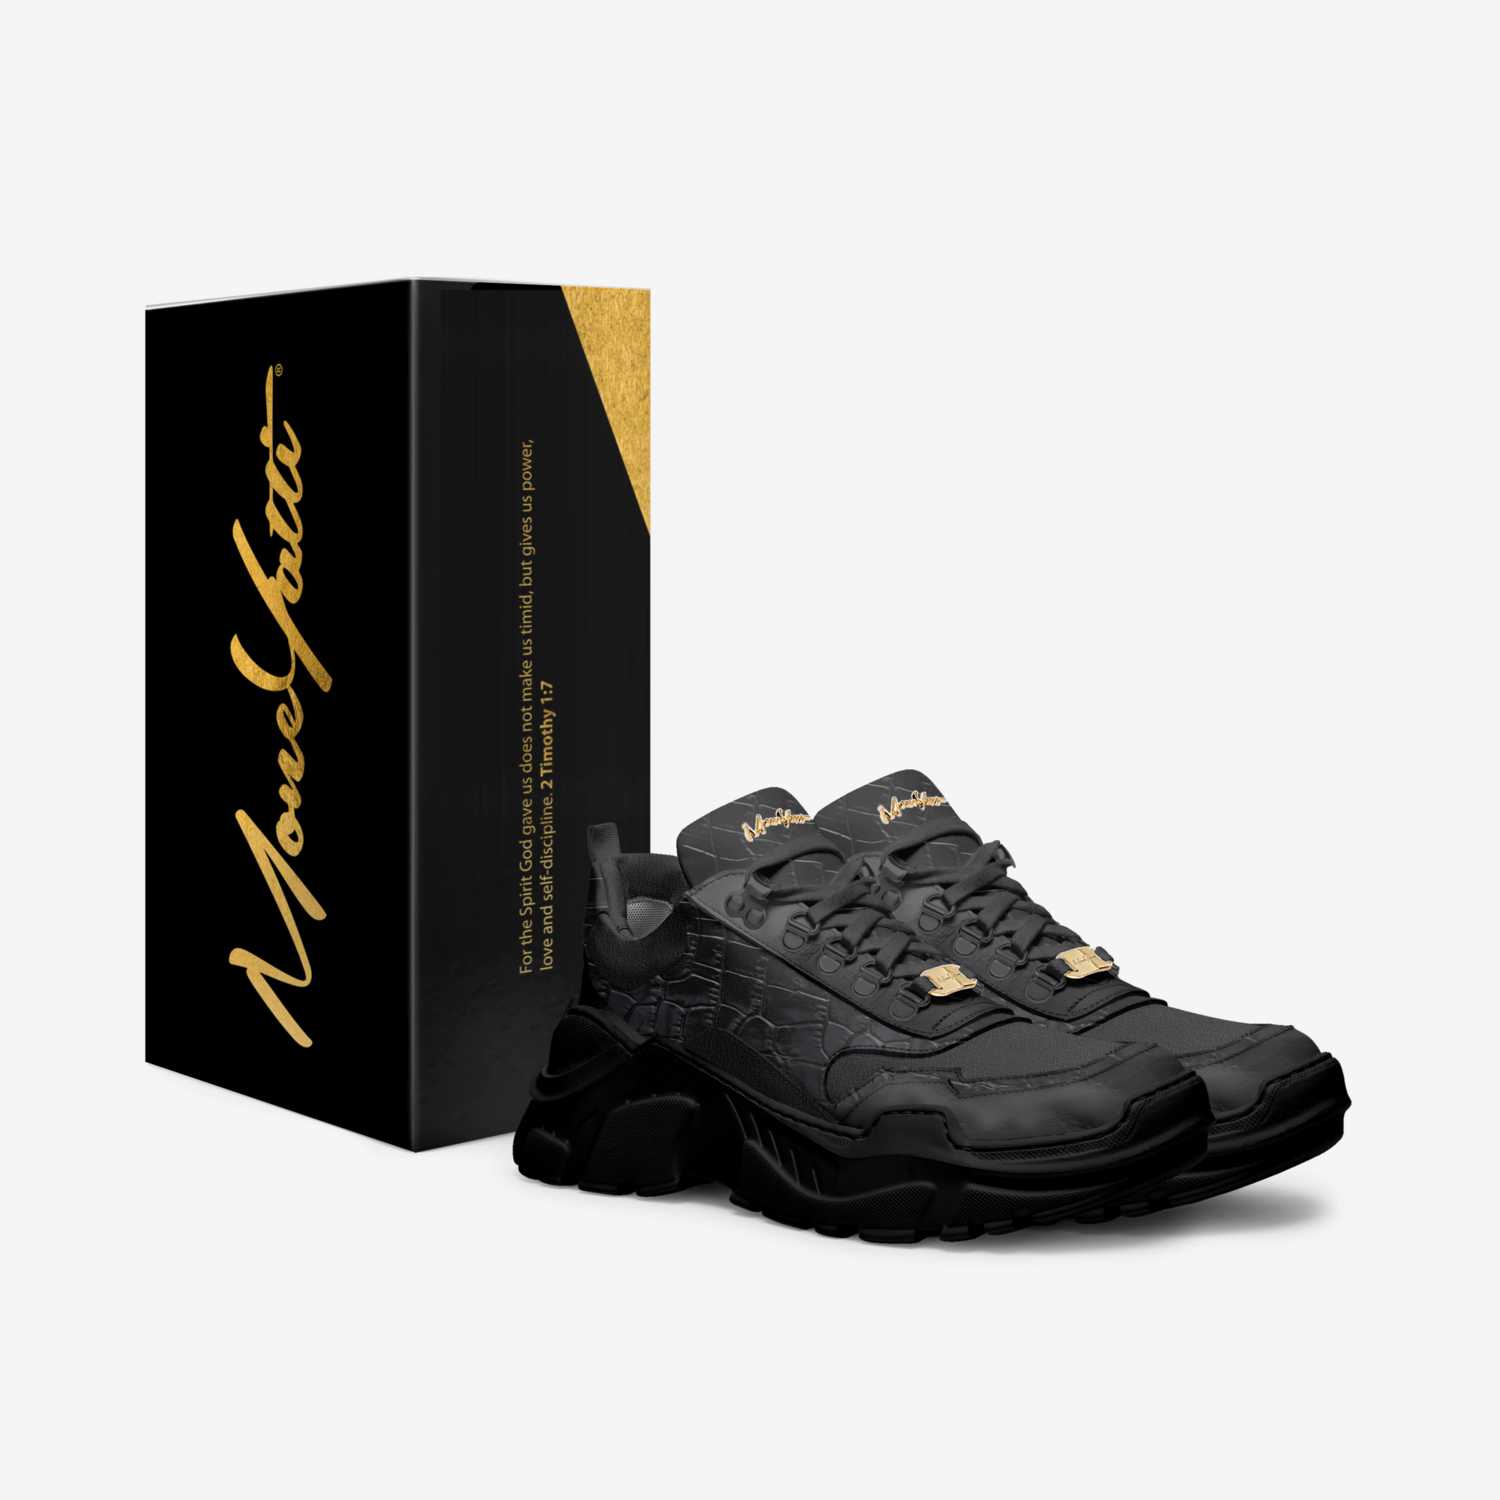 Moneyatti MurkHits custom made in Italy shoes by Moneyatti Brand | Box view